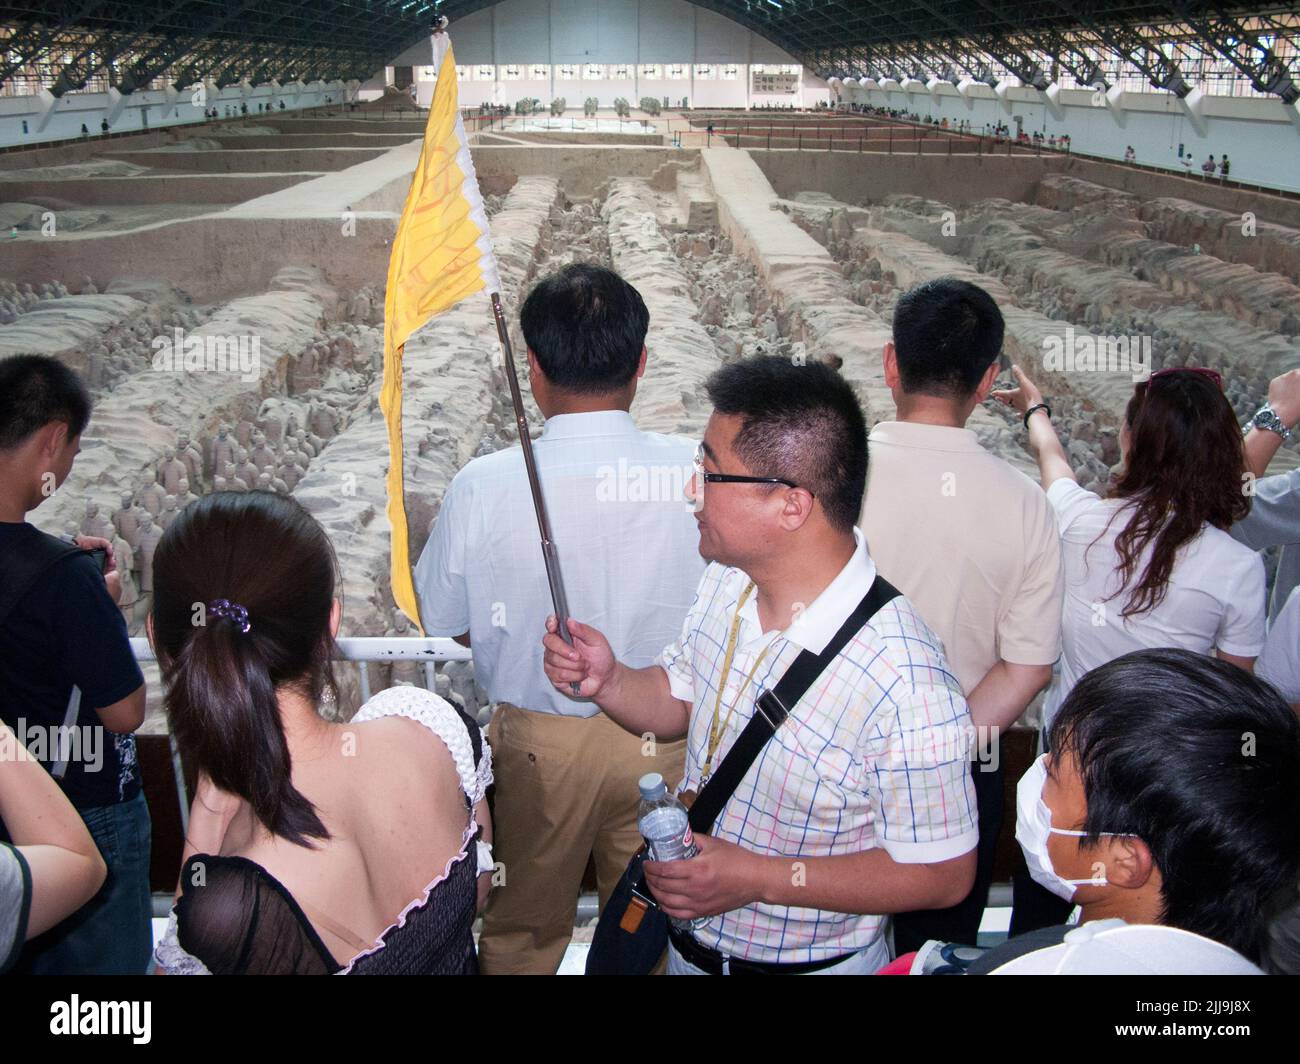 Guide touristique avec un drapeau aux couleurs vives qui mène à une fête de touristes chinois visitant / observant le stand 1 de l'armée de terre cuite au musée du Mausolée de l'empereur Qinshihuang à Xi'an, en Chine. PRC. (125) Banque D'Images